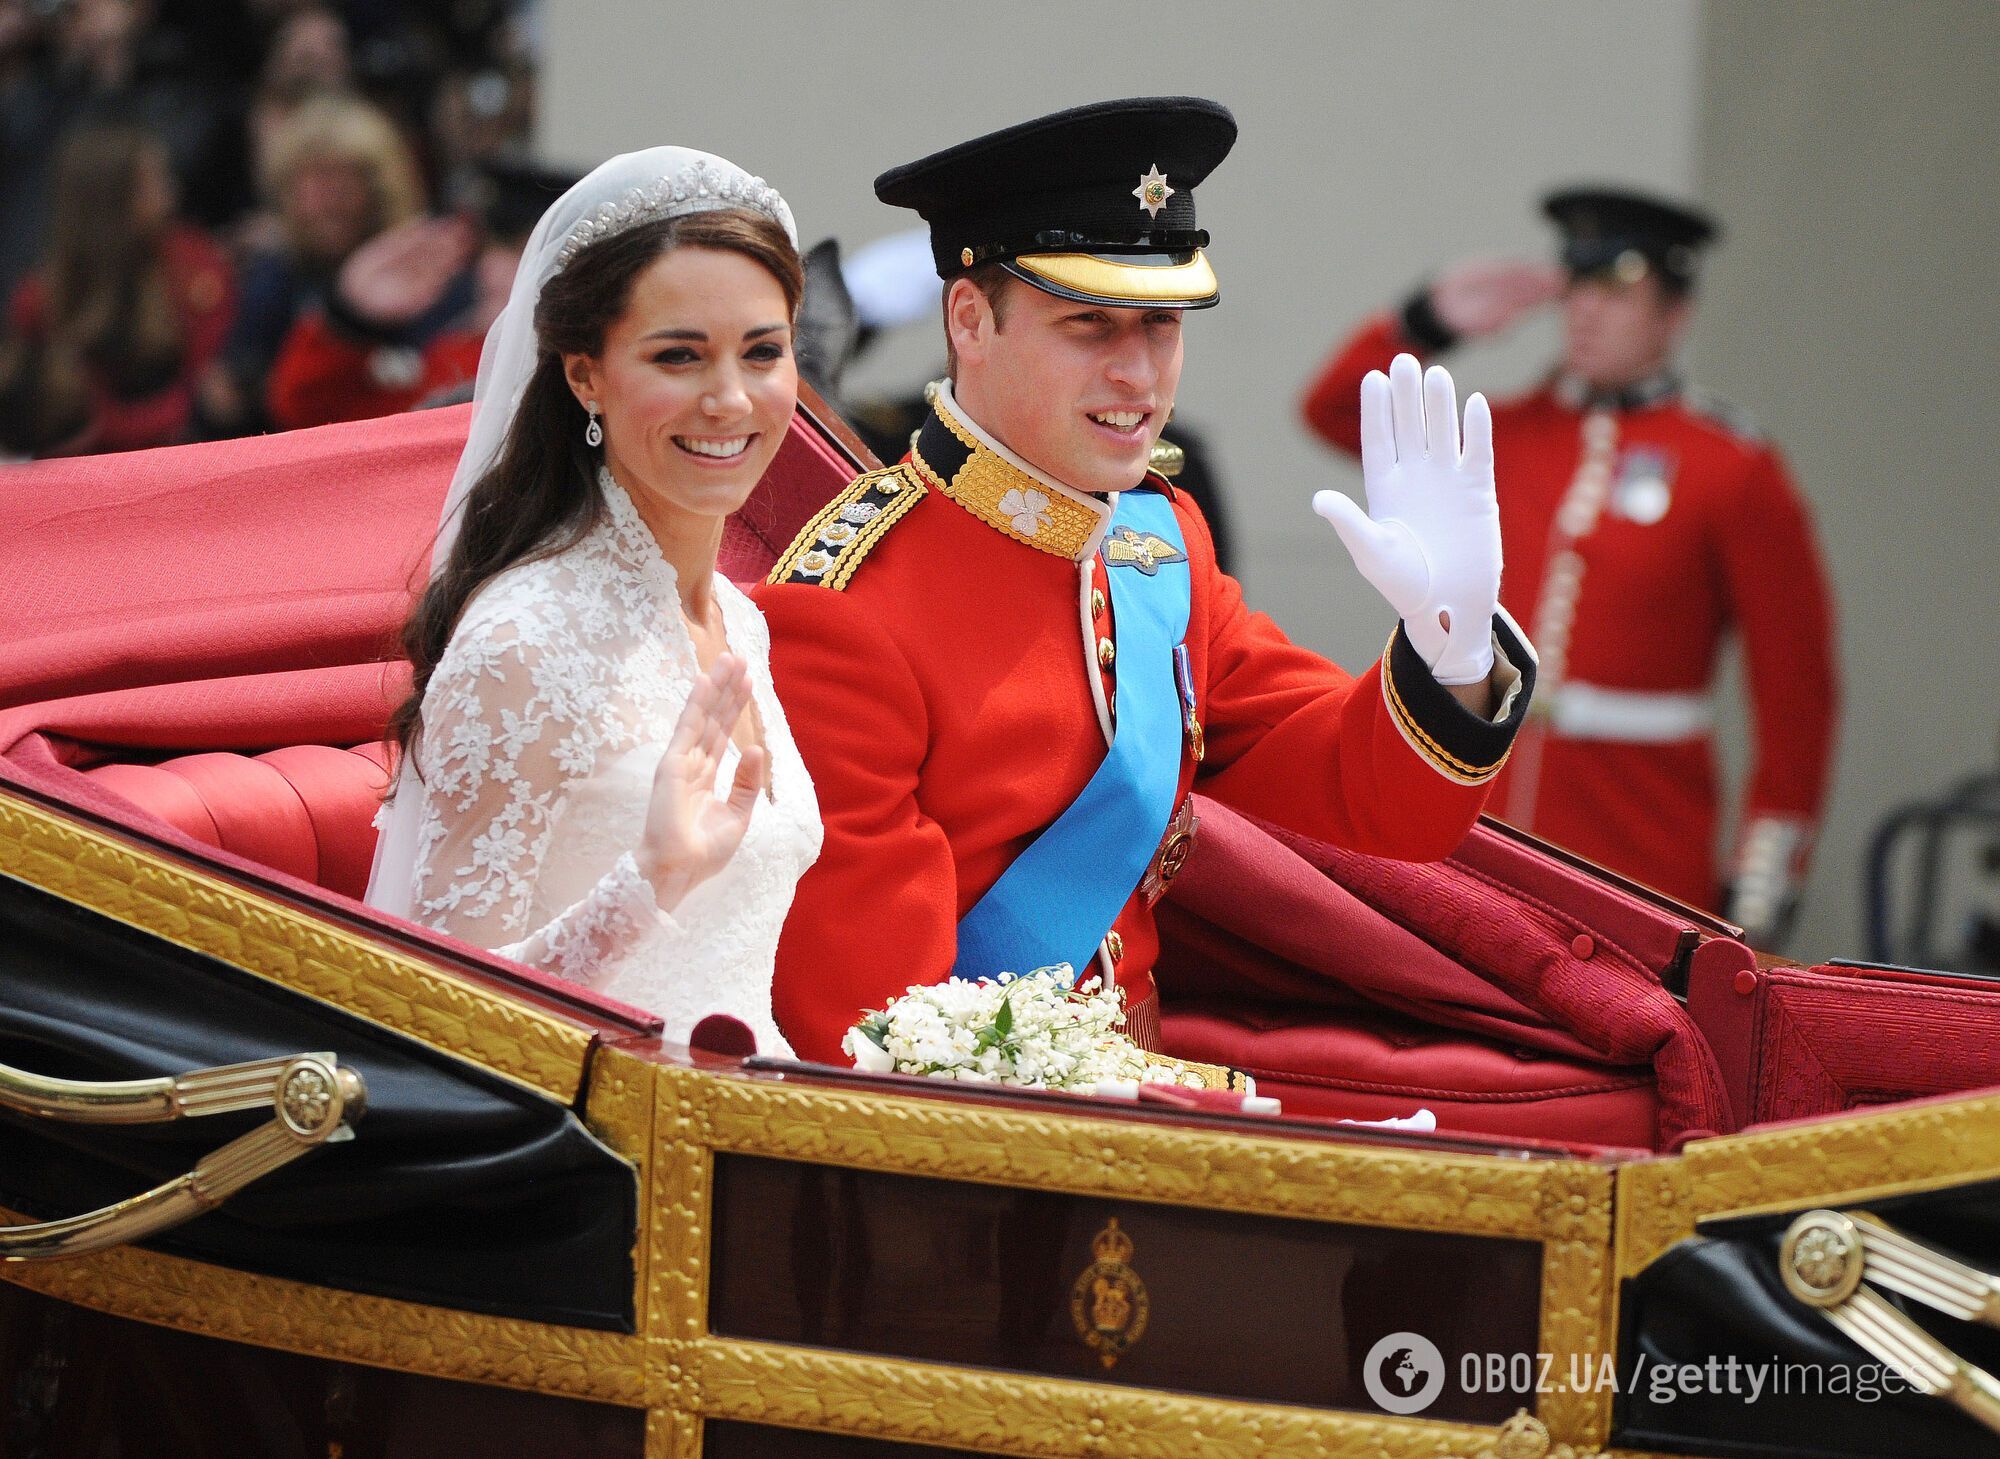 Стало известно, какой королевский протокол нарушила Елизавета II на свадьбе принца Уильяма и Кейт Миддлтон: но ее вины здесь нет